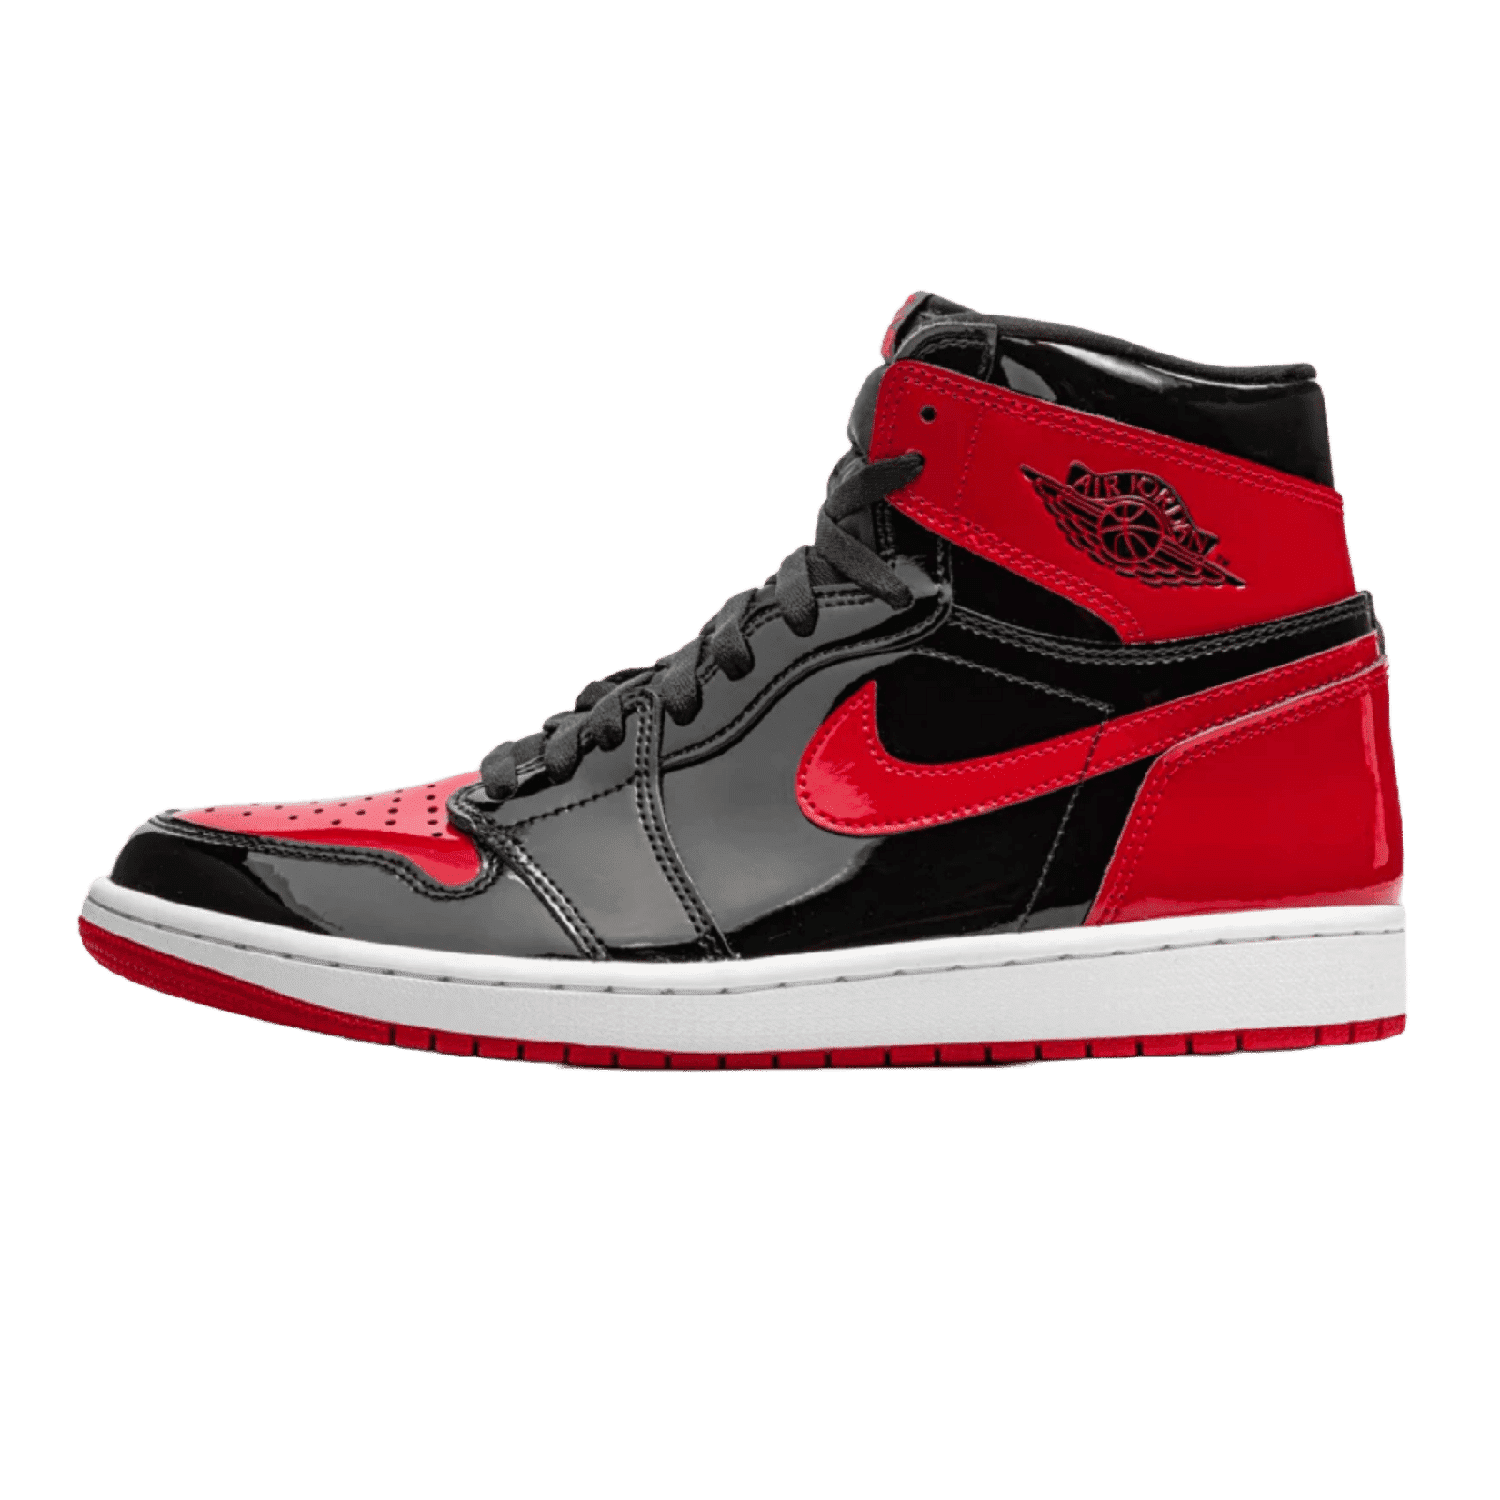 Air Jordan 1 High OG Patent Bred - Sneakerterritory; Sneaker Territory